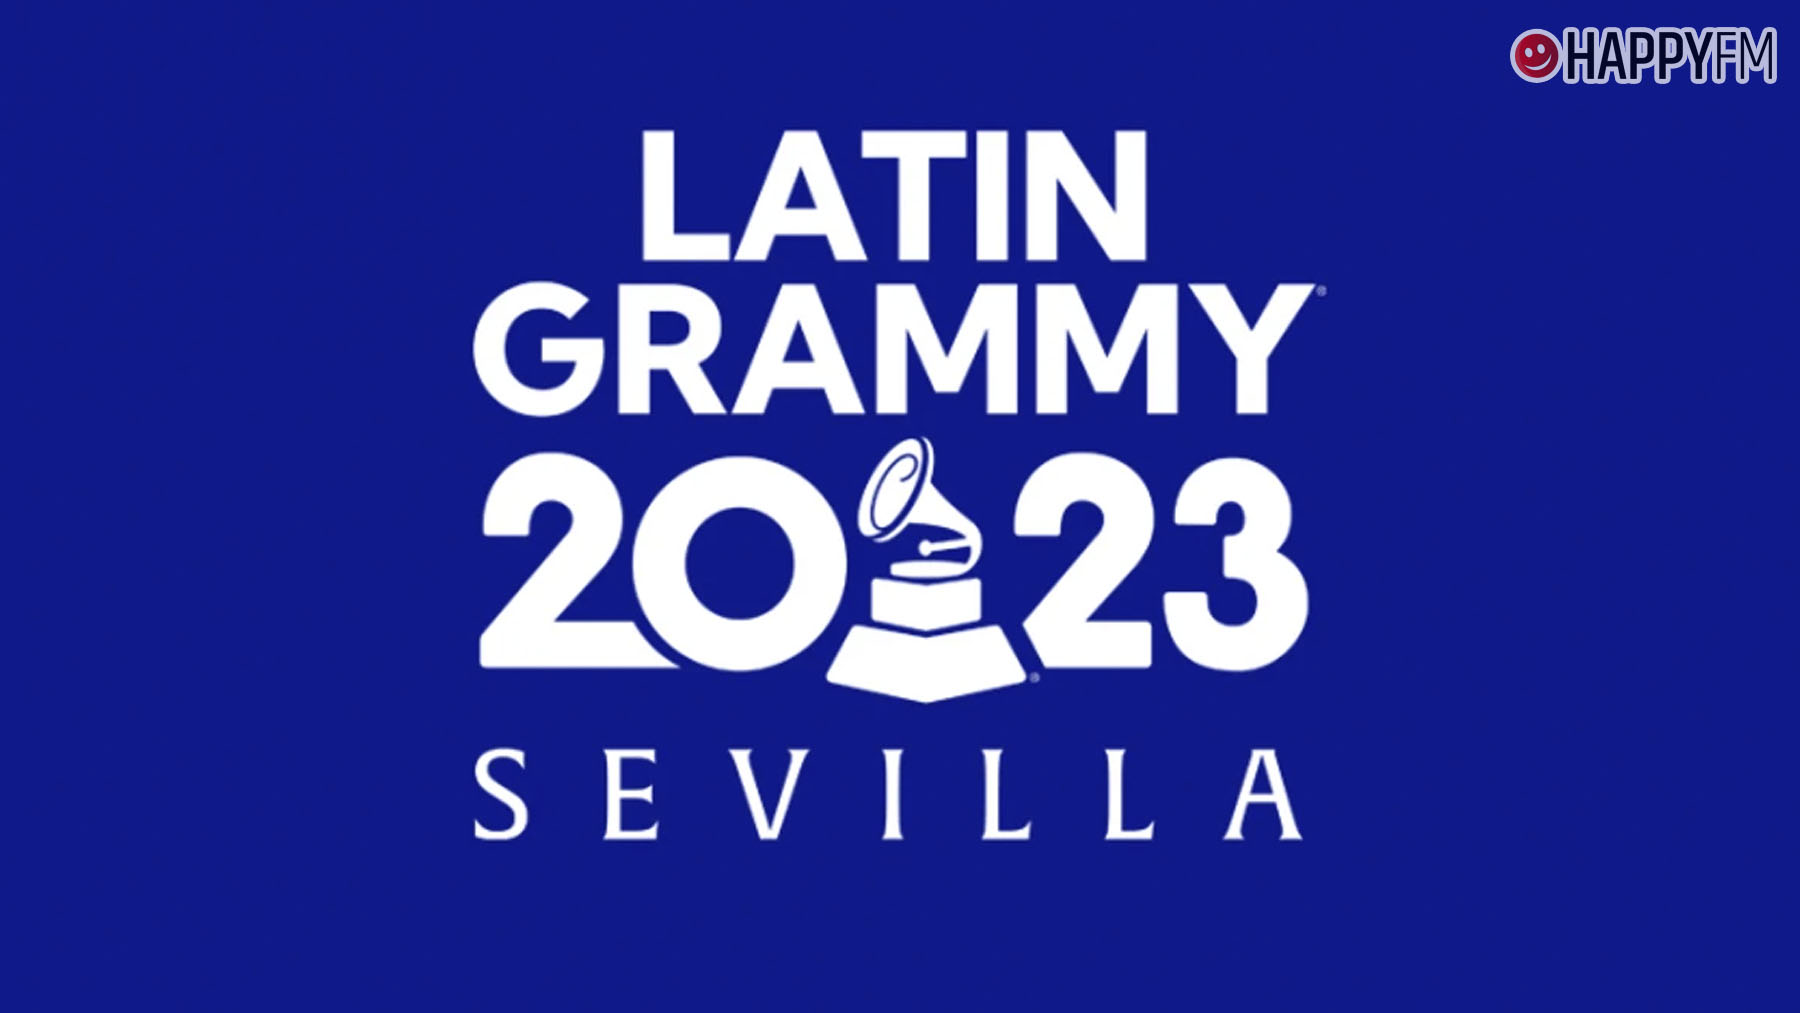 Precio de las entradas de los Grammy Latino 2023 en Sevilla